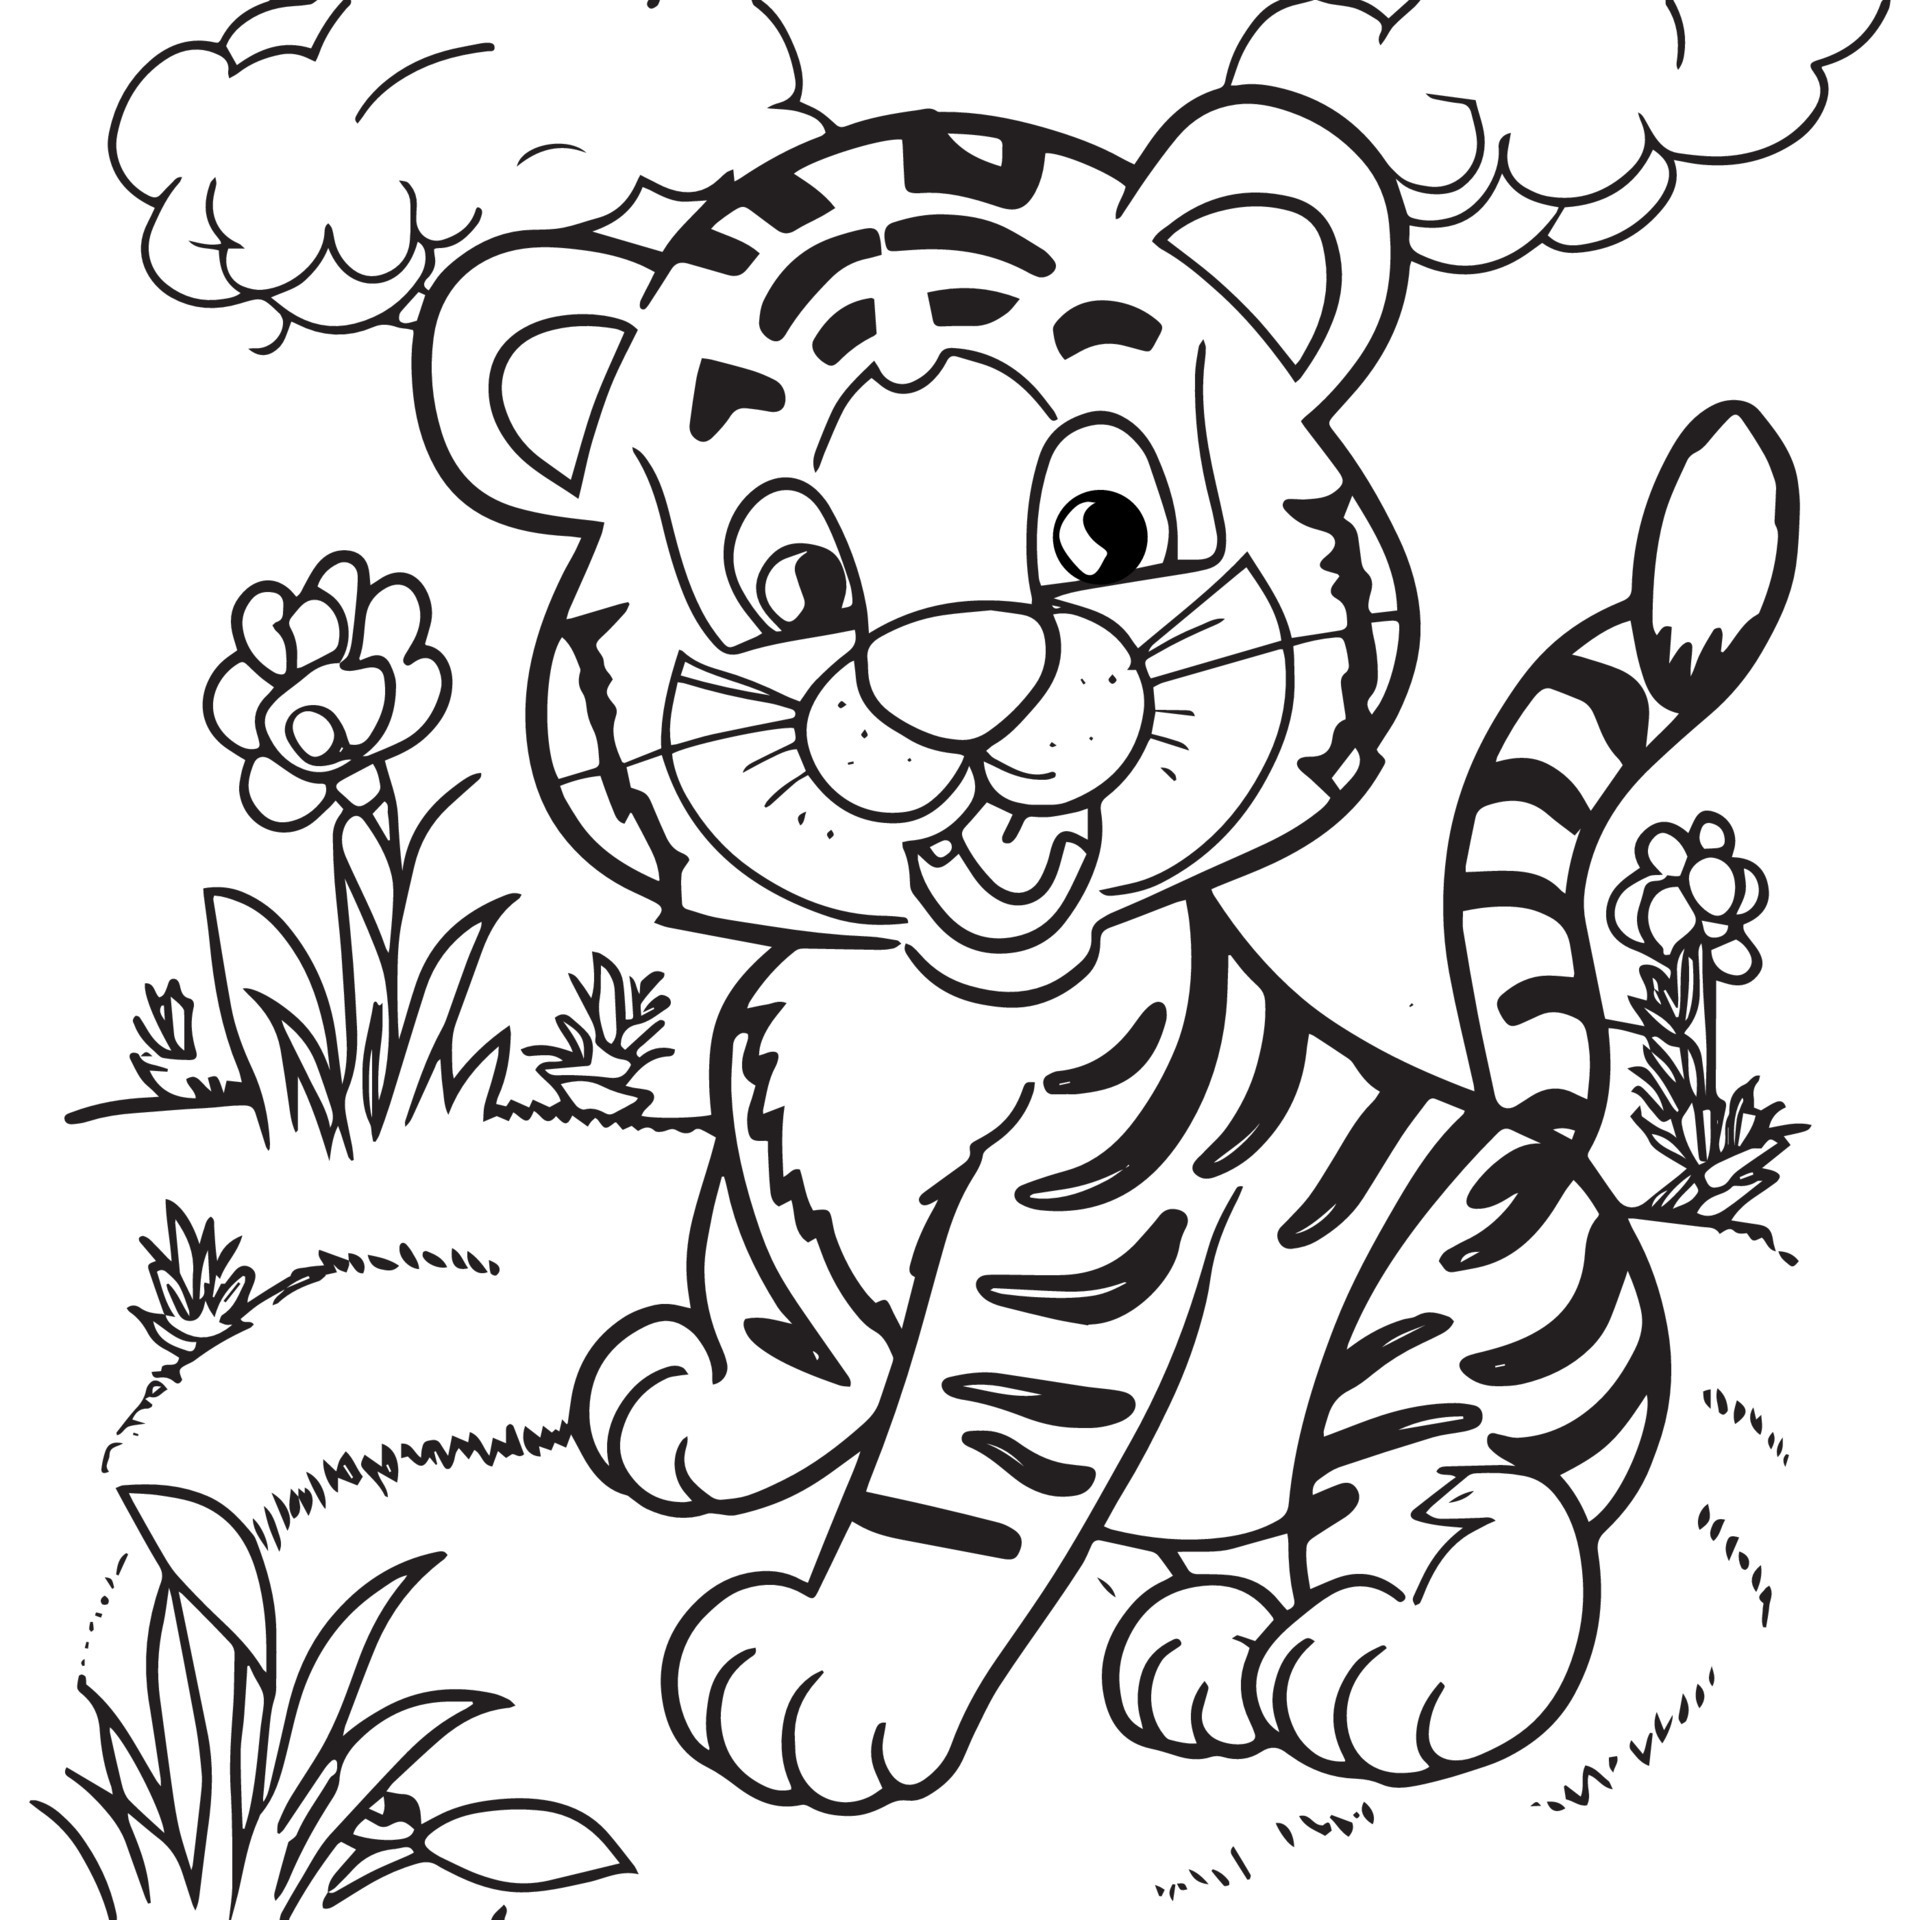 permite colorir o livro de colorir animais fofos para crianças pequenas.  jogo de educação para crianças. pintar o tigre 11570080 Vetor no Vecteezy